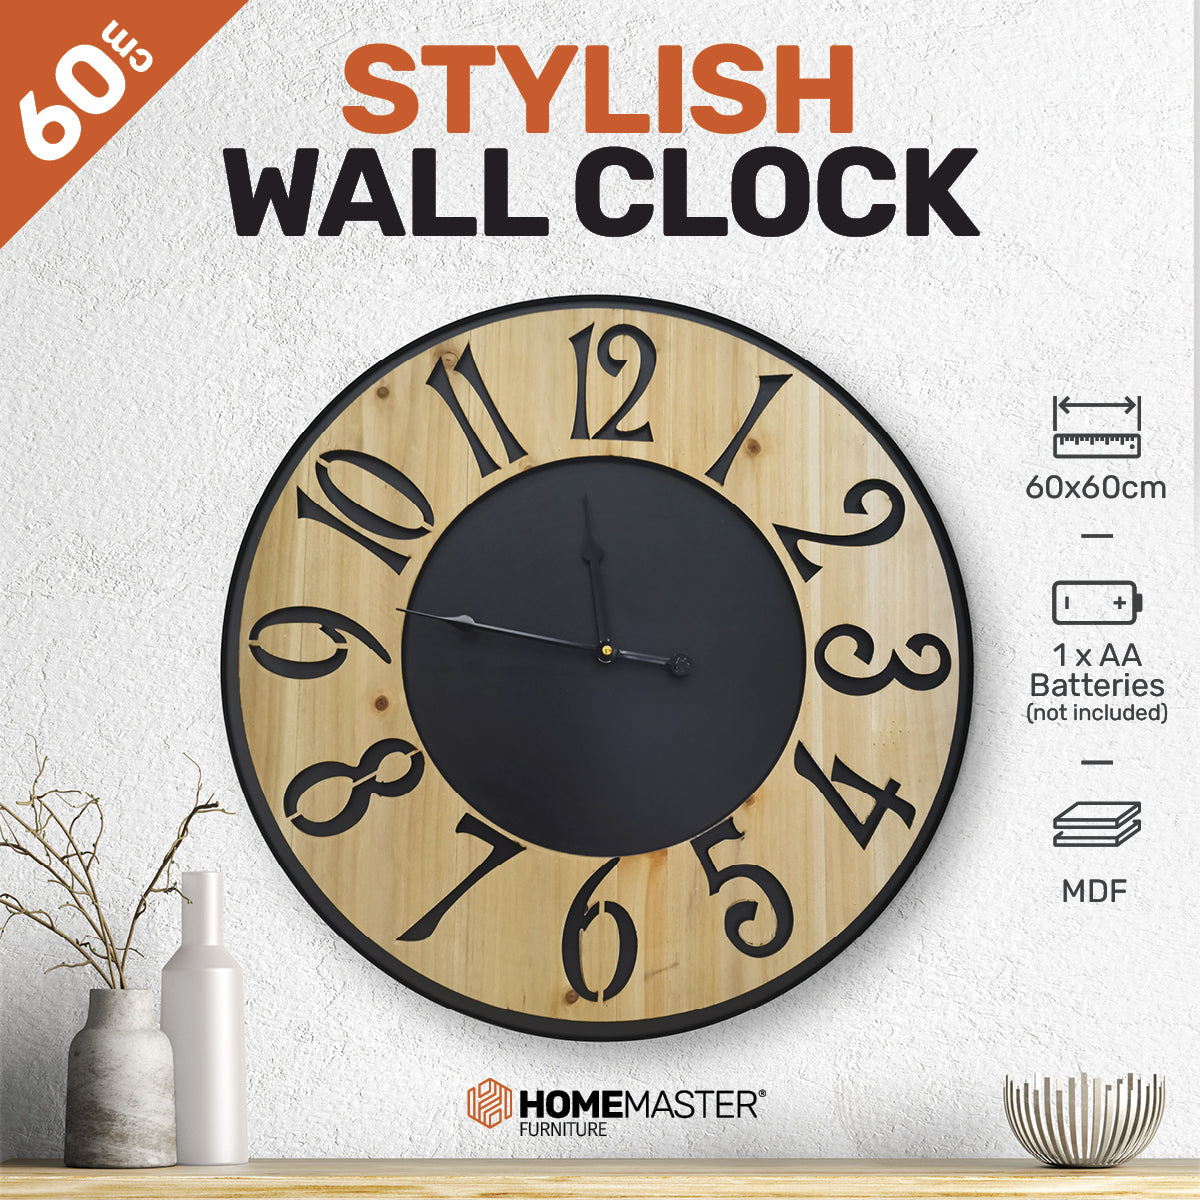 Stylish Wall Clock